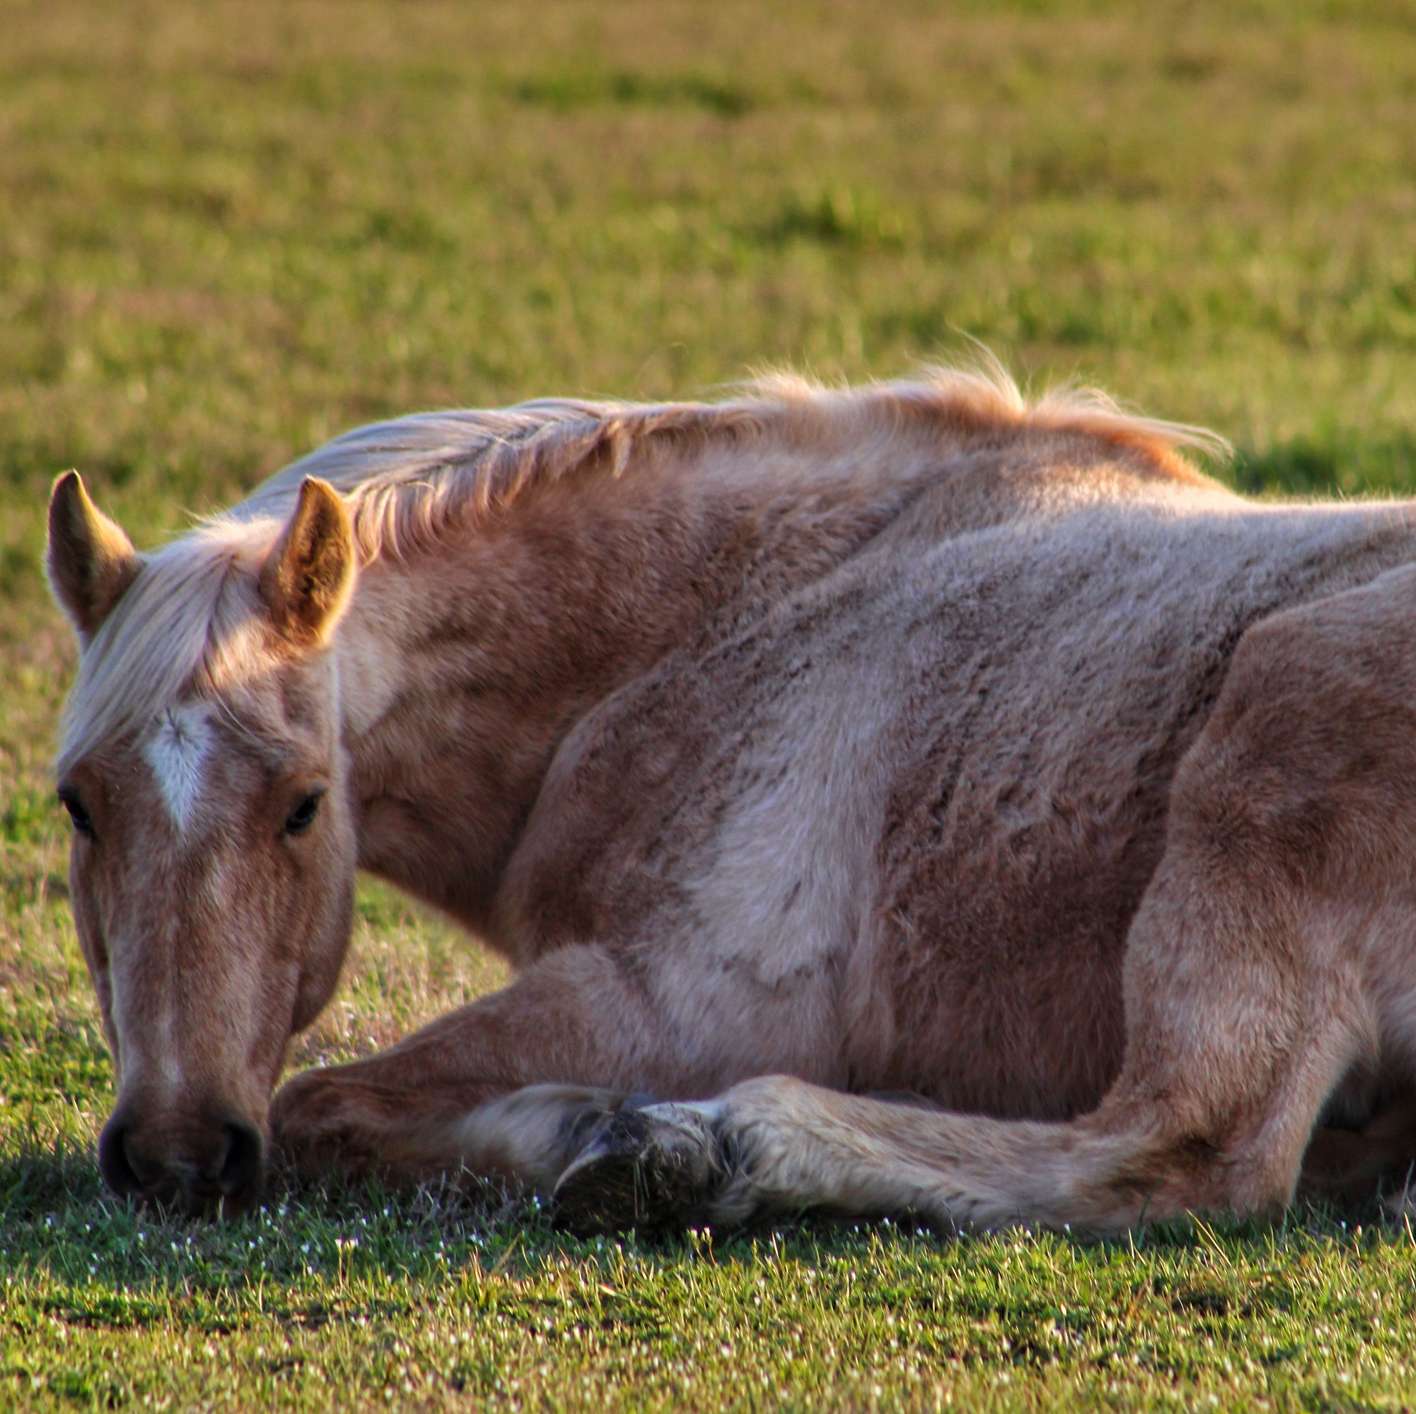 Allianz - Pferdekrankenversicherung - Impfung: Rot-weisses Pferd liegt auf dem Gras